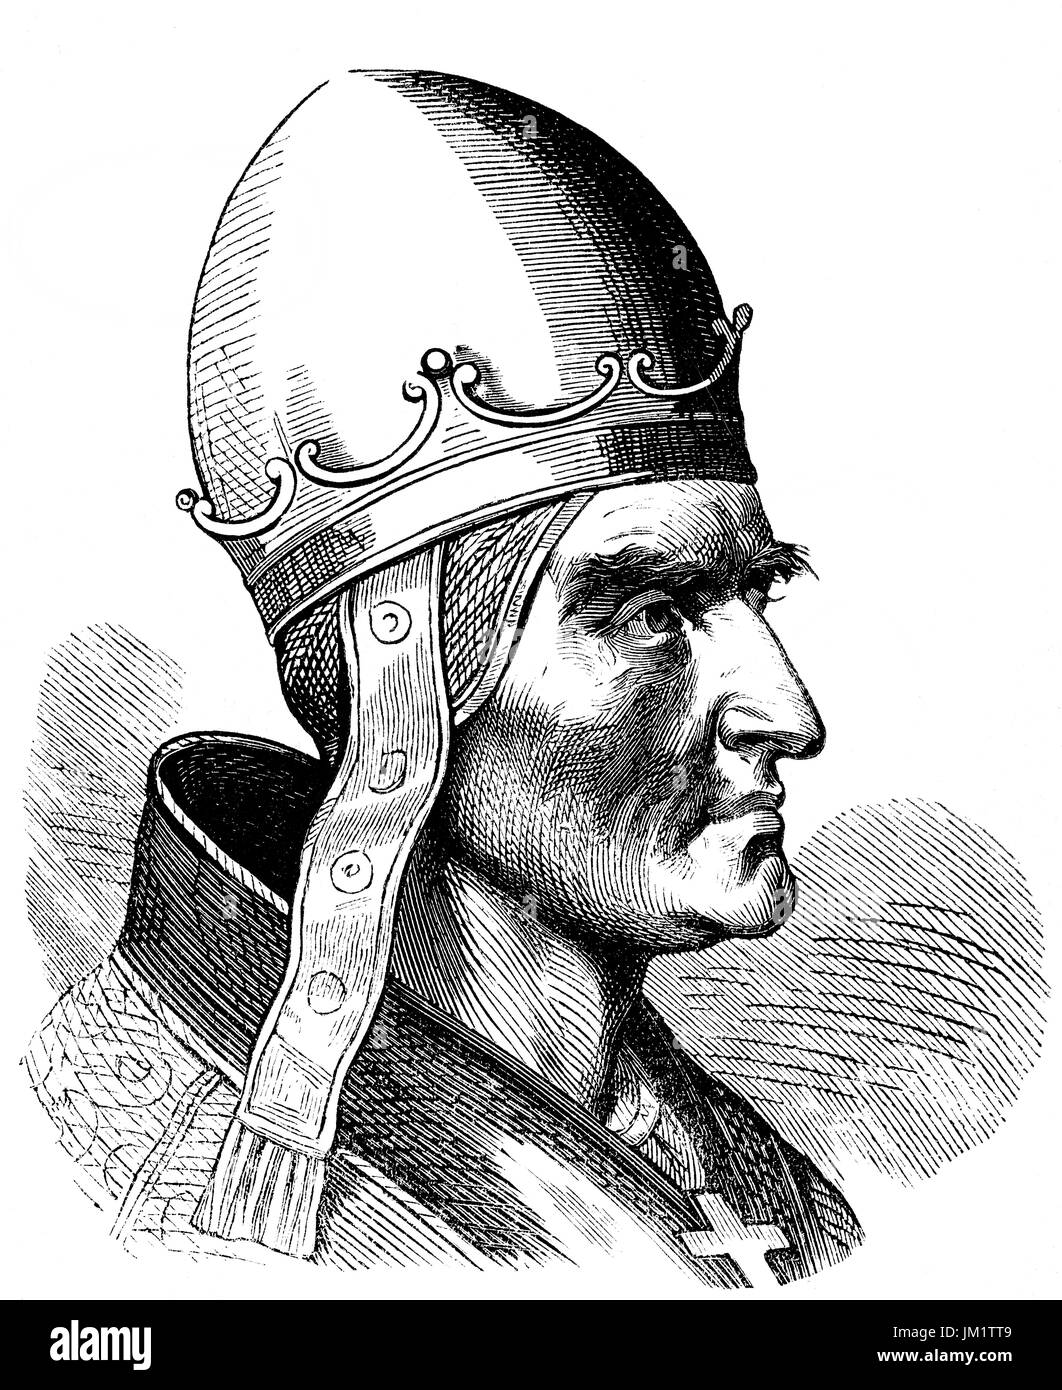 Papa Urbano IV, c. 1195 - 2 ottobre 1264, nato Jacques Pantaléon, fu Papa dal 29 agosto 1261 fino alla sua morte nel 1264 Foto Stock